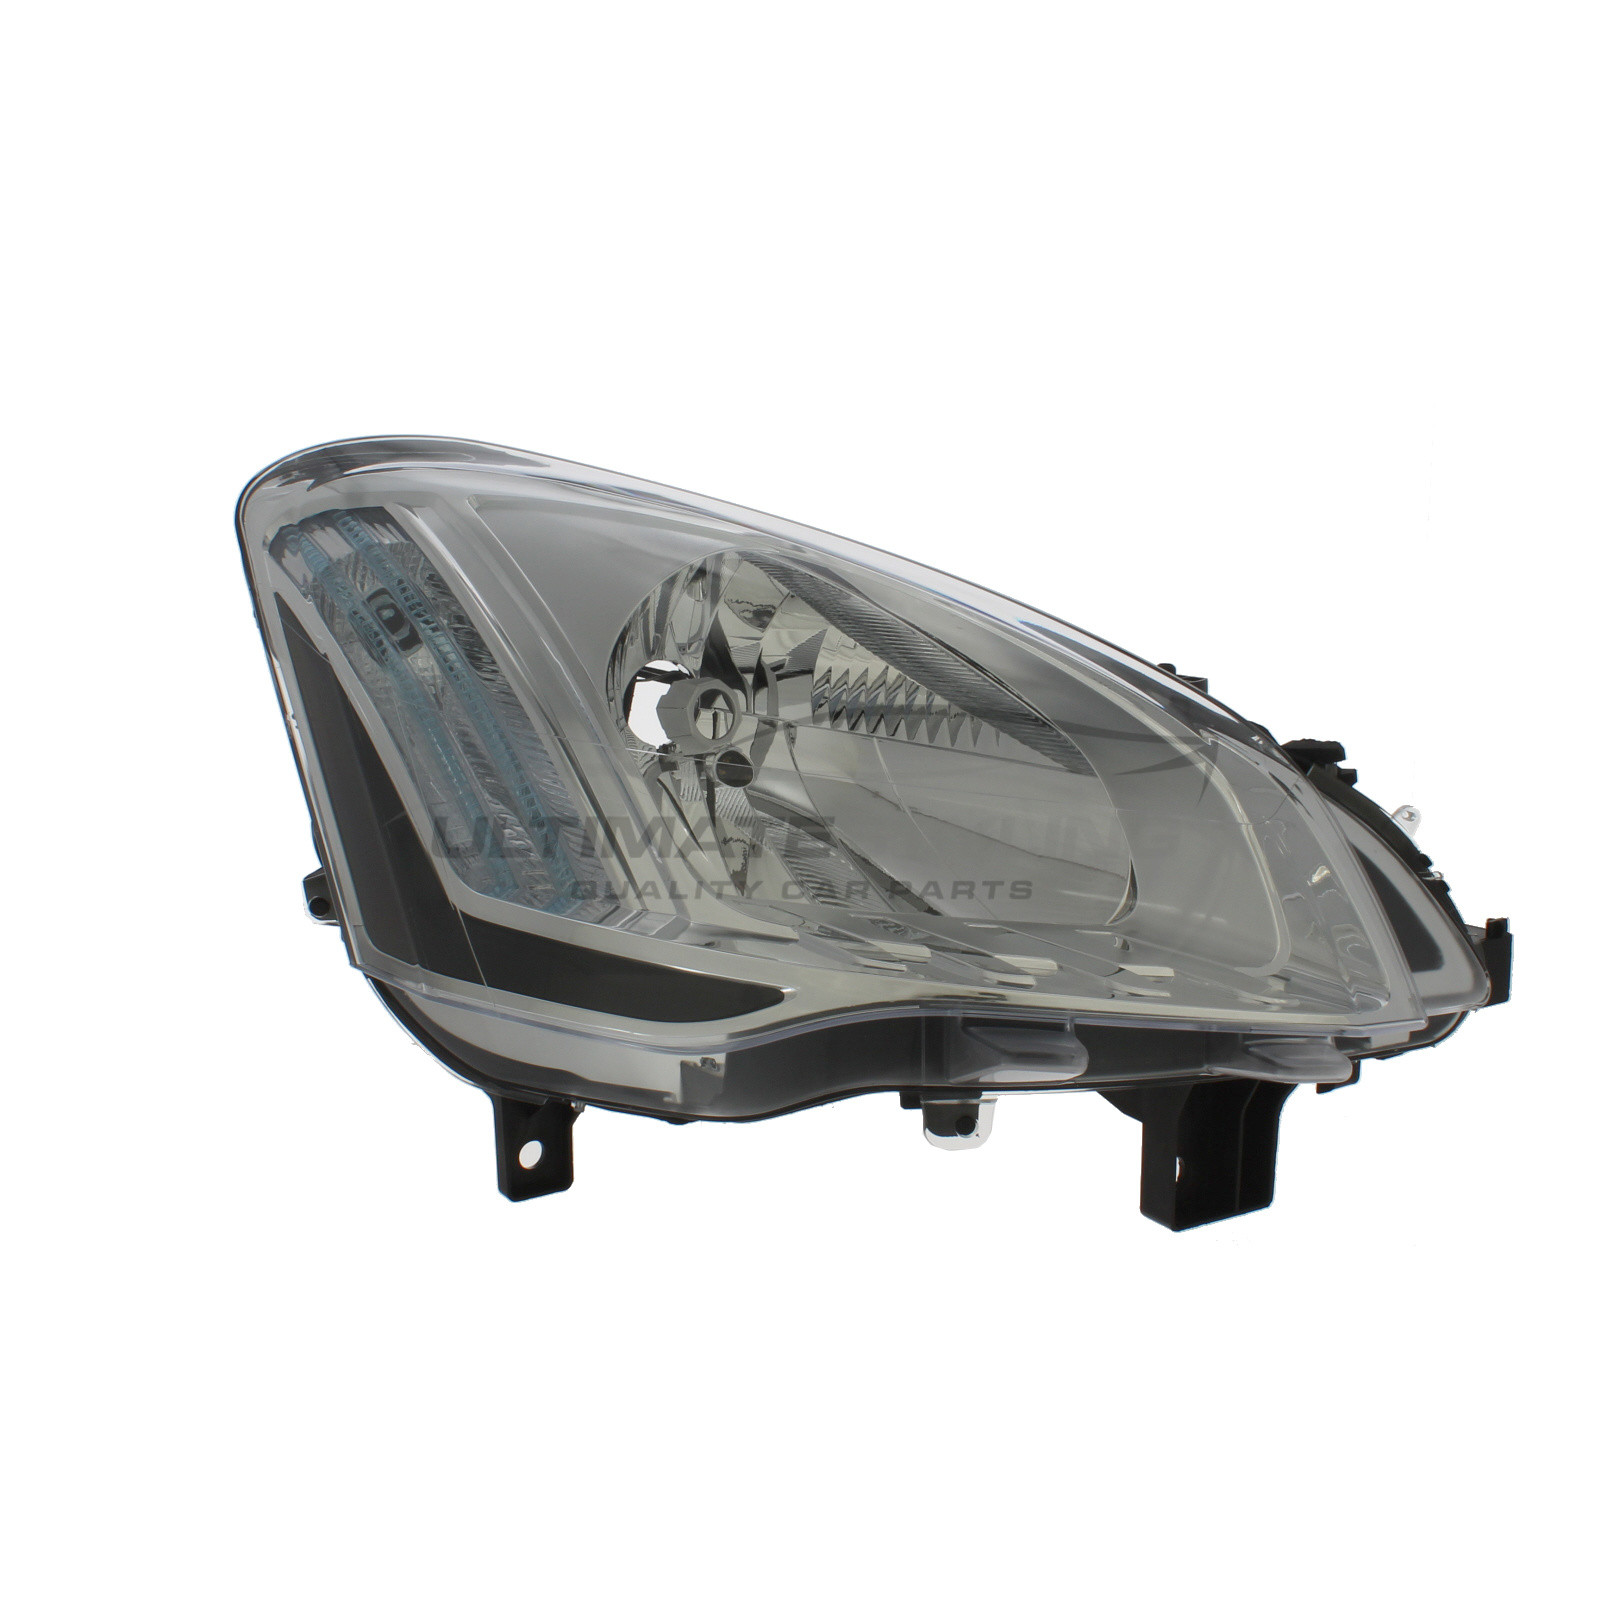 Headlight / Headlamp for Peugeot Partner